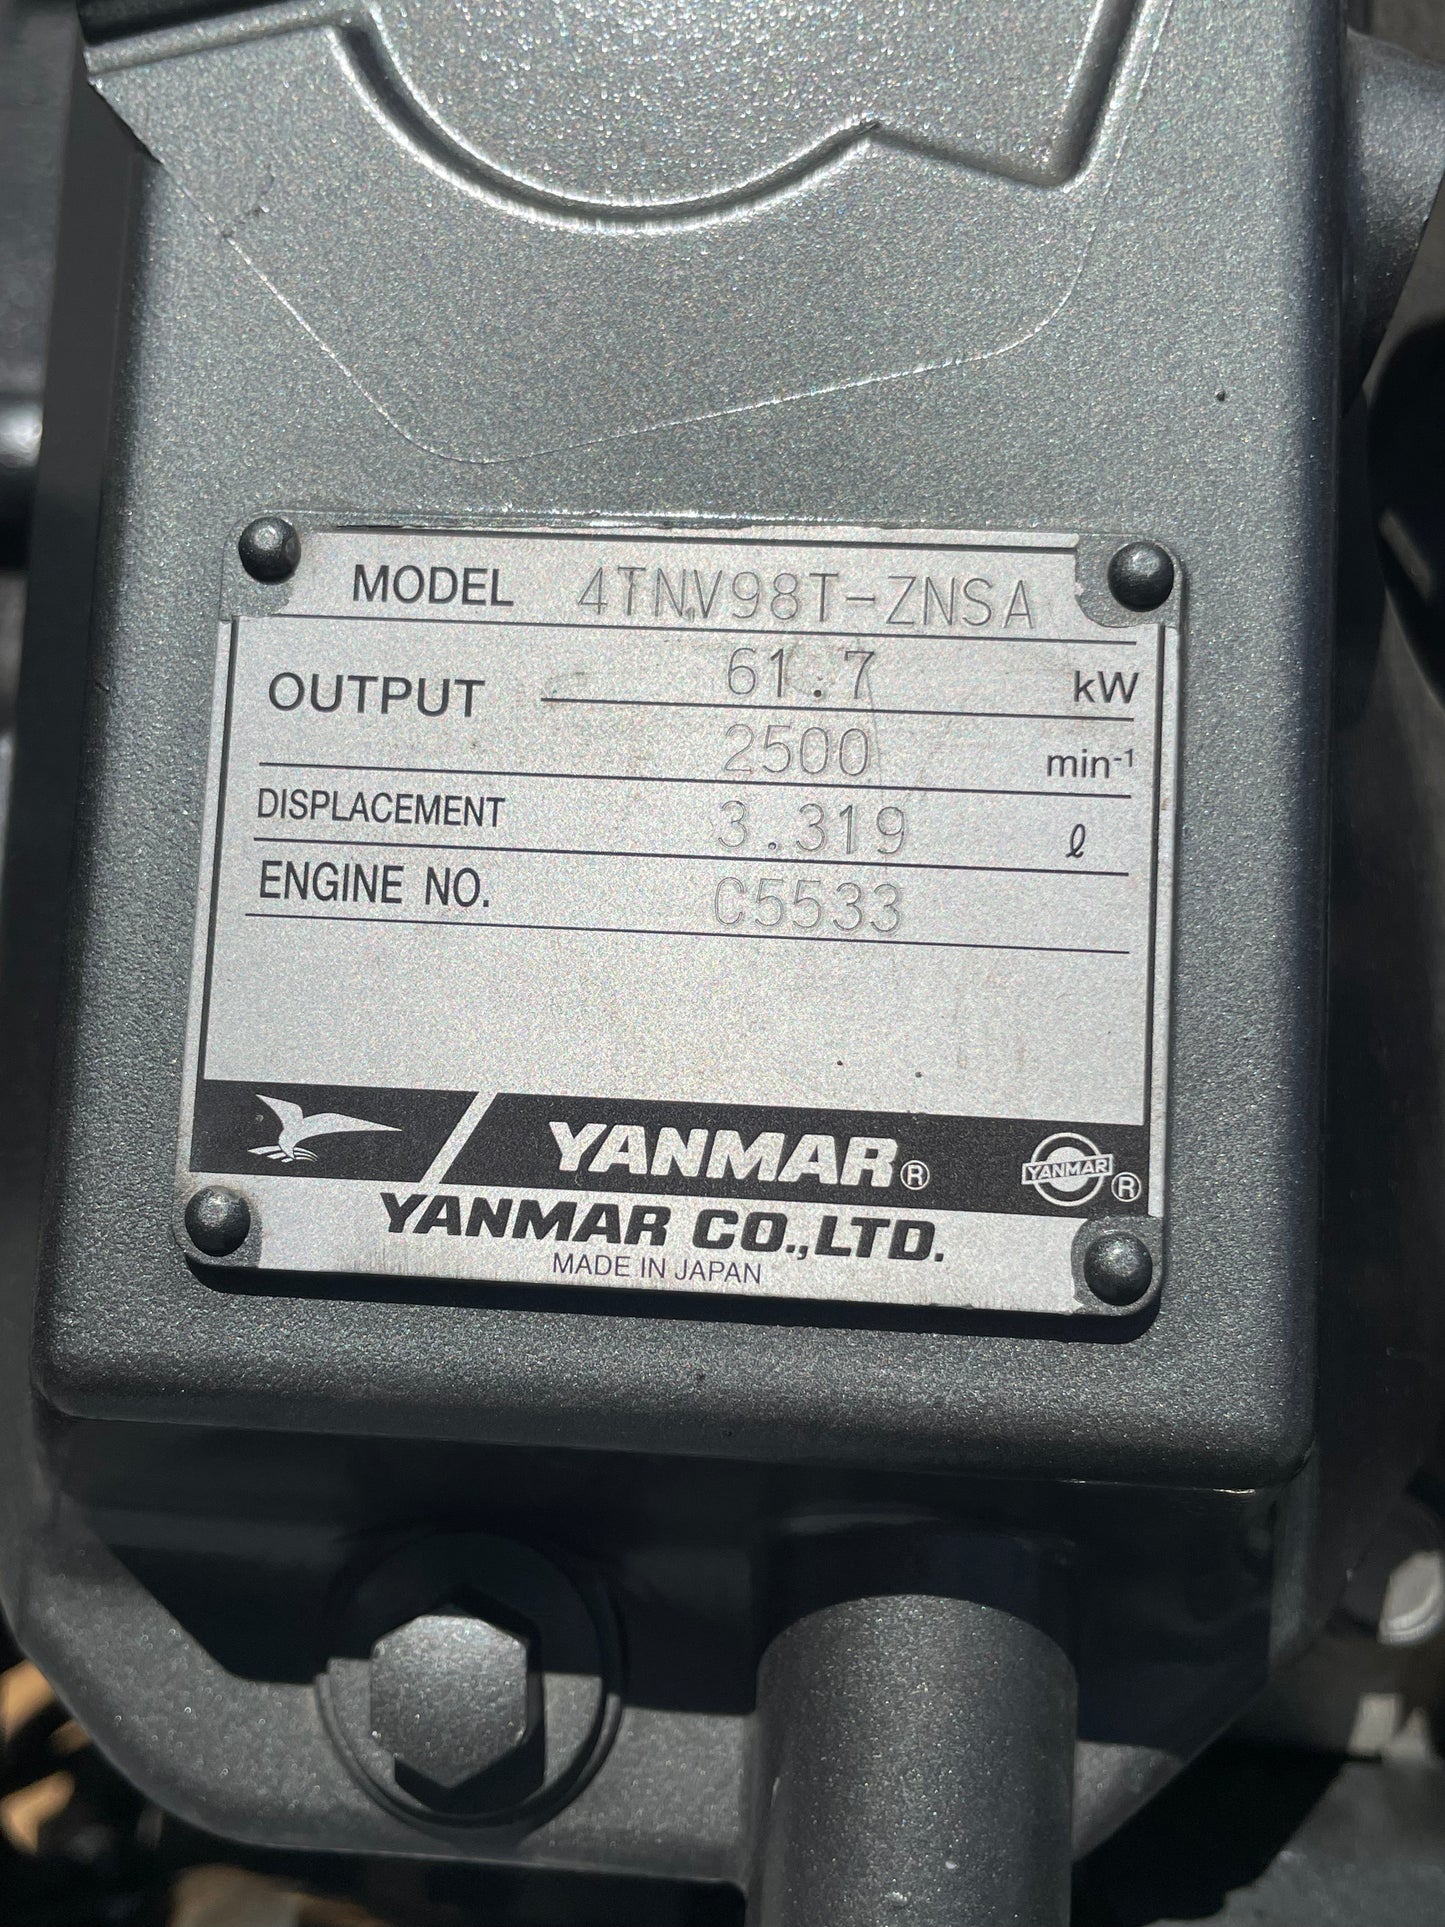 Yanmar 4TNV98T-ZNSA